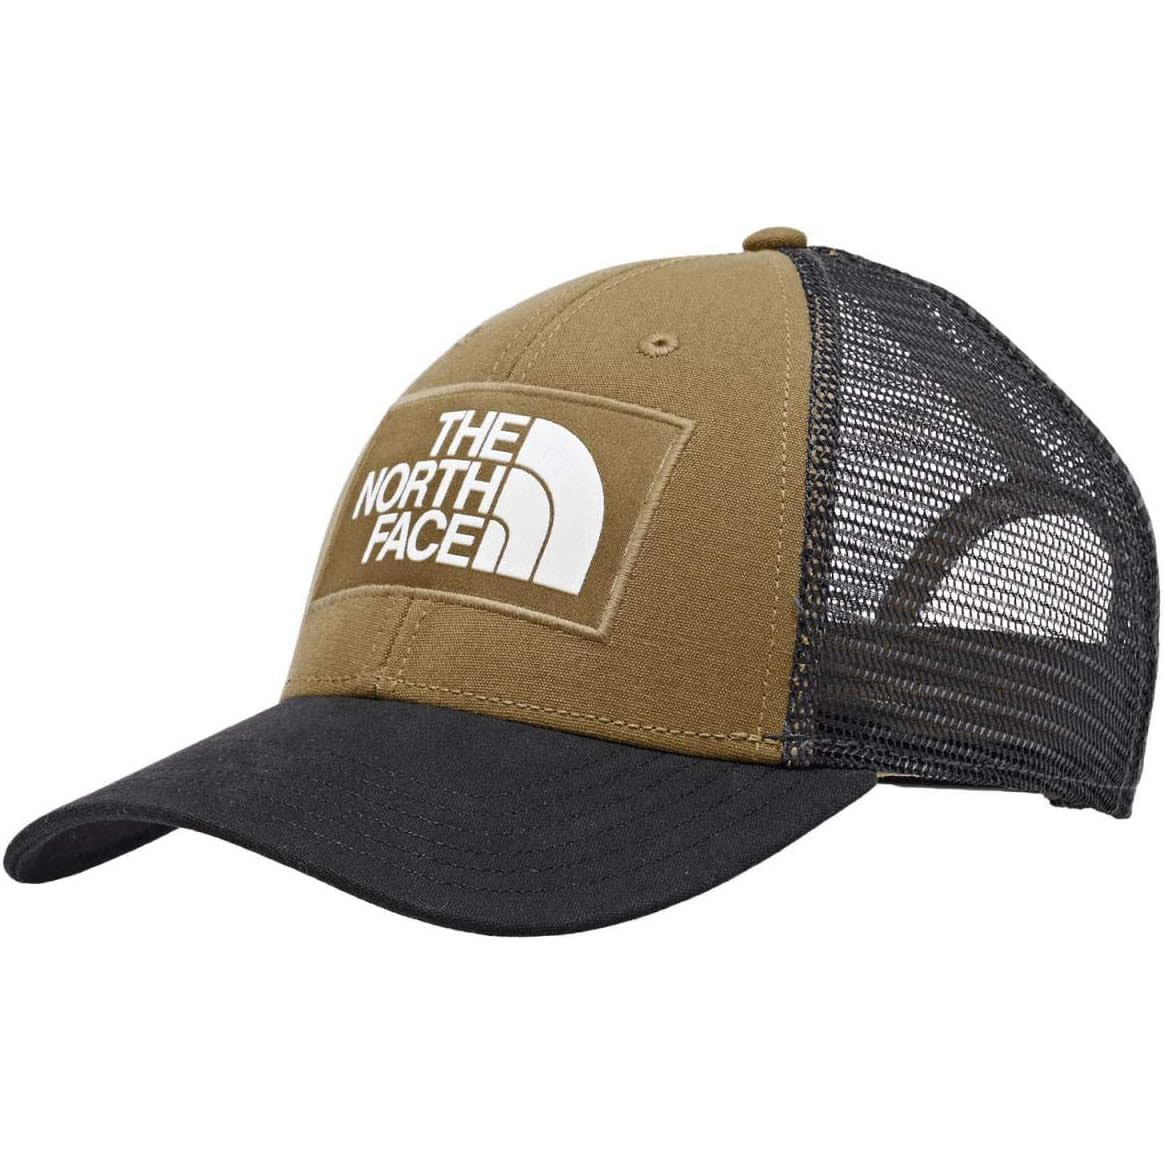 نکته خرید - قیمت روز کلاه کپ نورث فیس مدل Mudder Trucker خرید